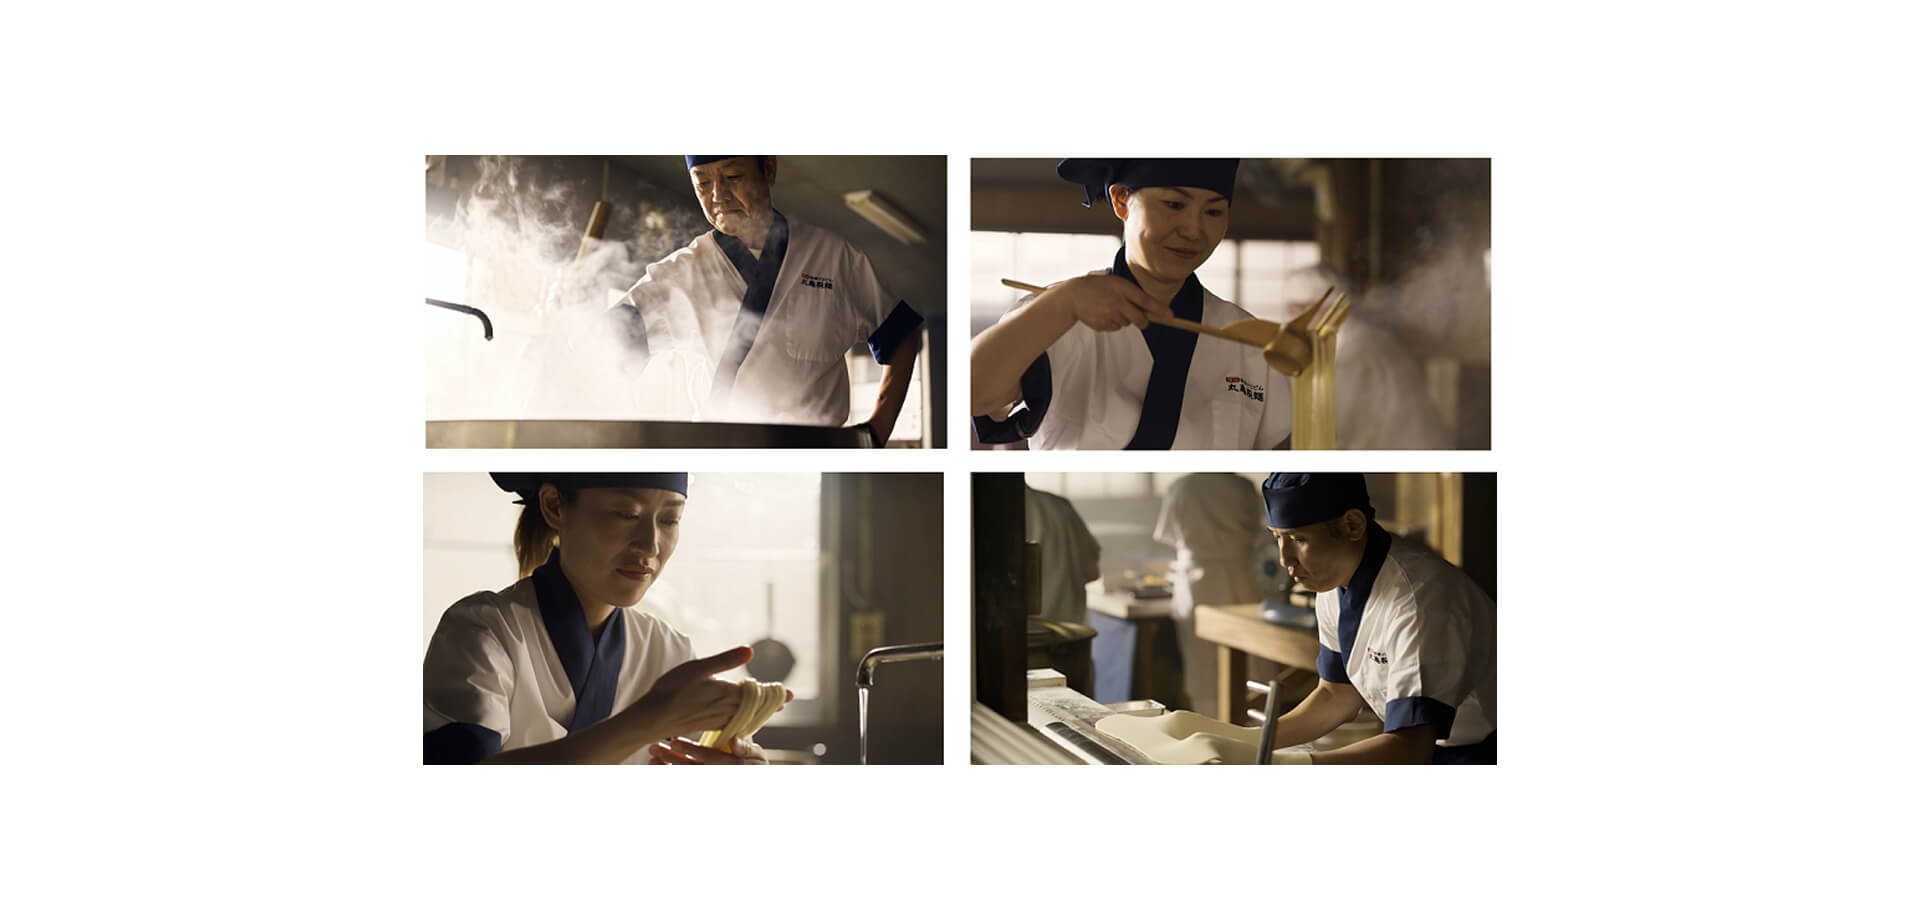 丸亀製麺所でうどんを作る職人